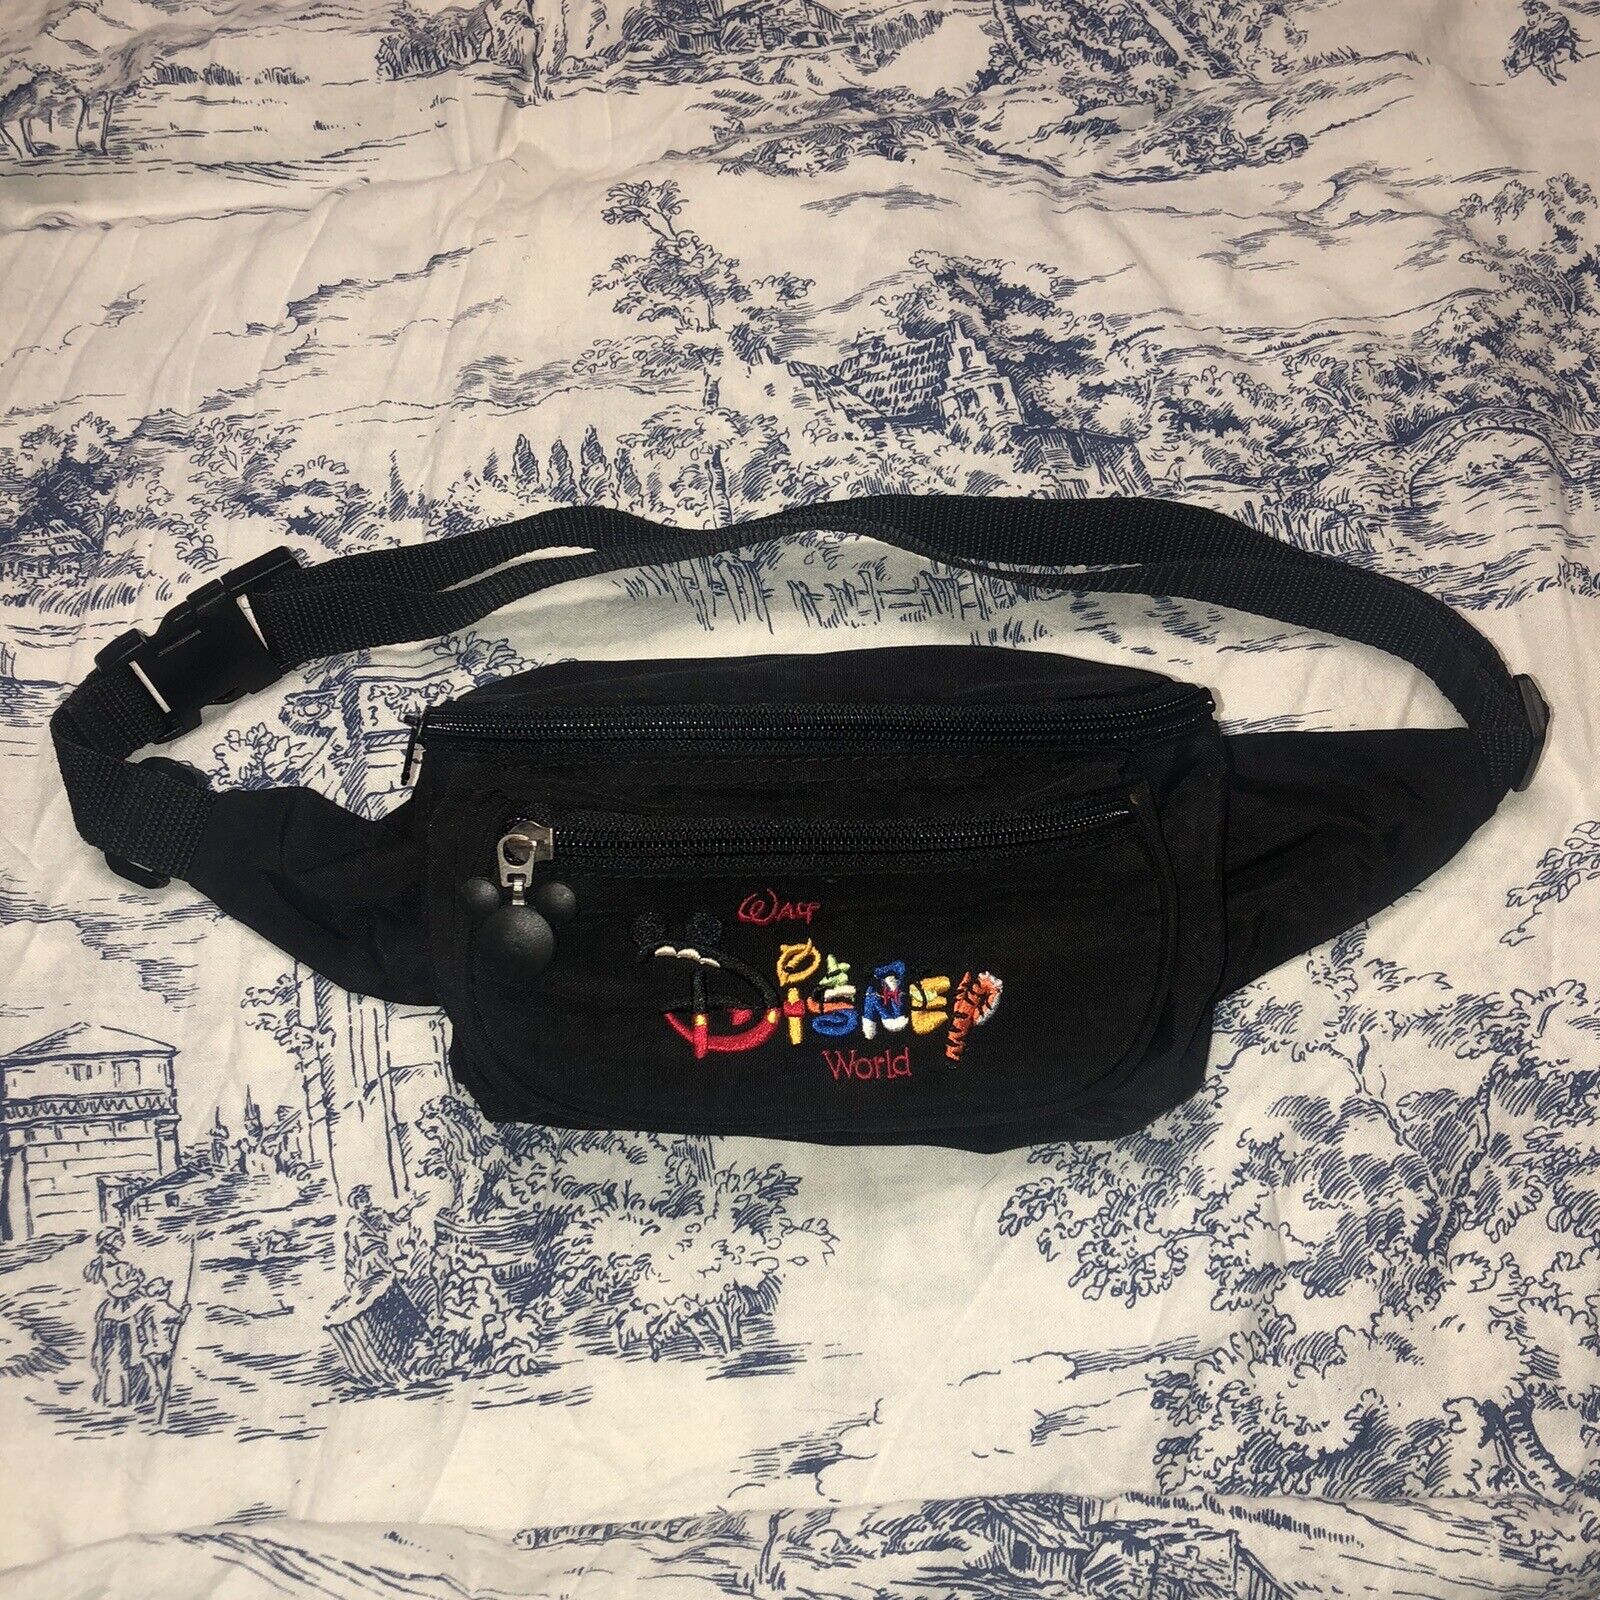 VTG Walt Disney World Embroidered Belt Bag 90s Vintage Mickey Mouse Fanny Pack